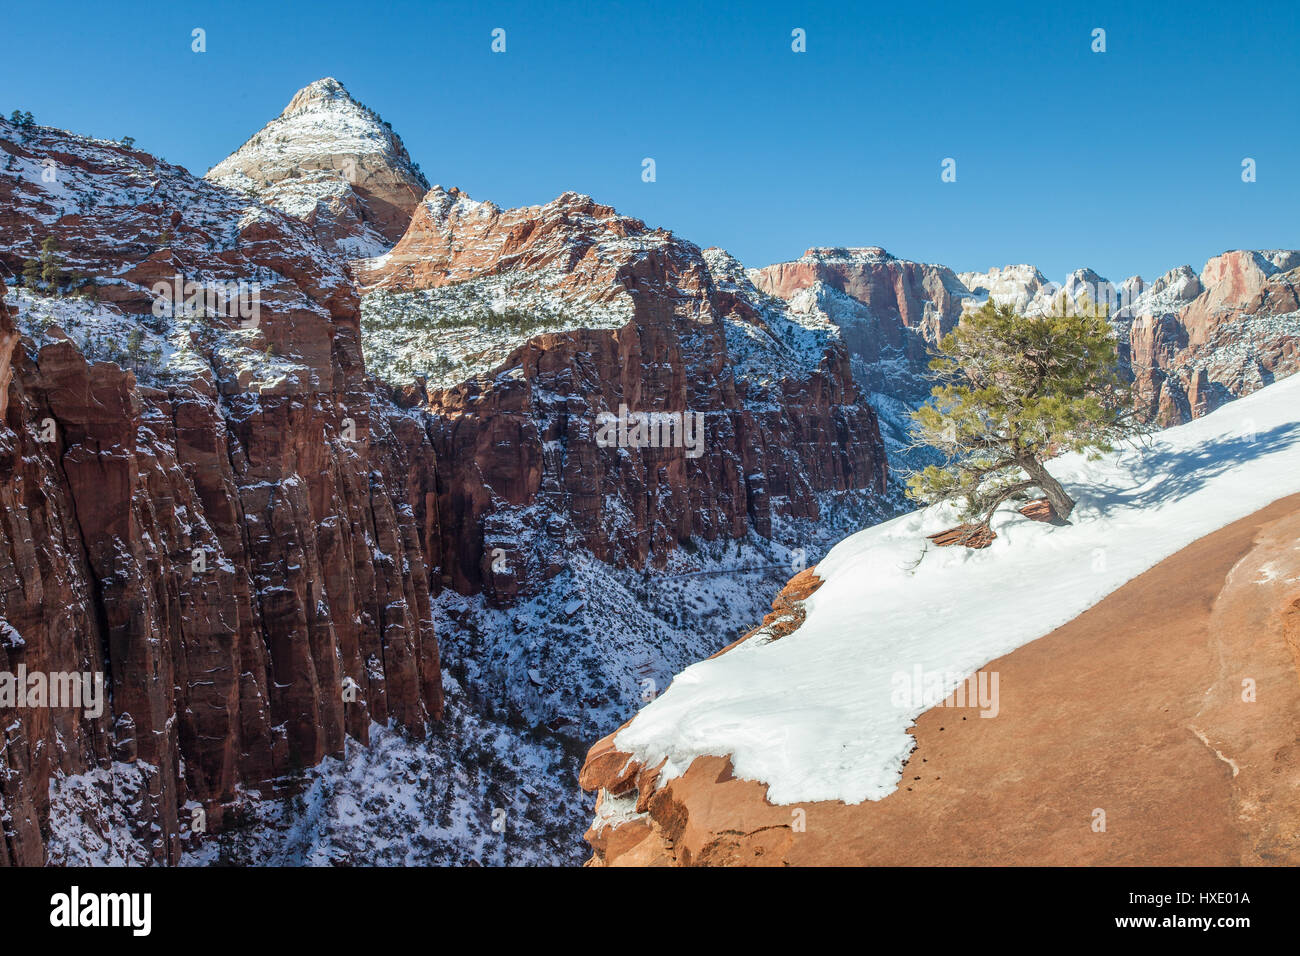 Neige de l'hiver dans la région de Zion National Park, Utah Banque D'Images